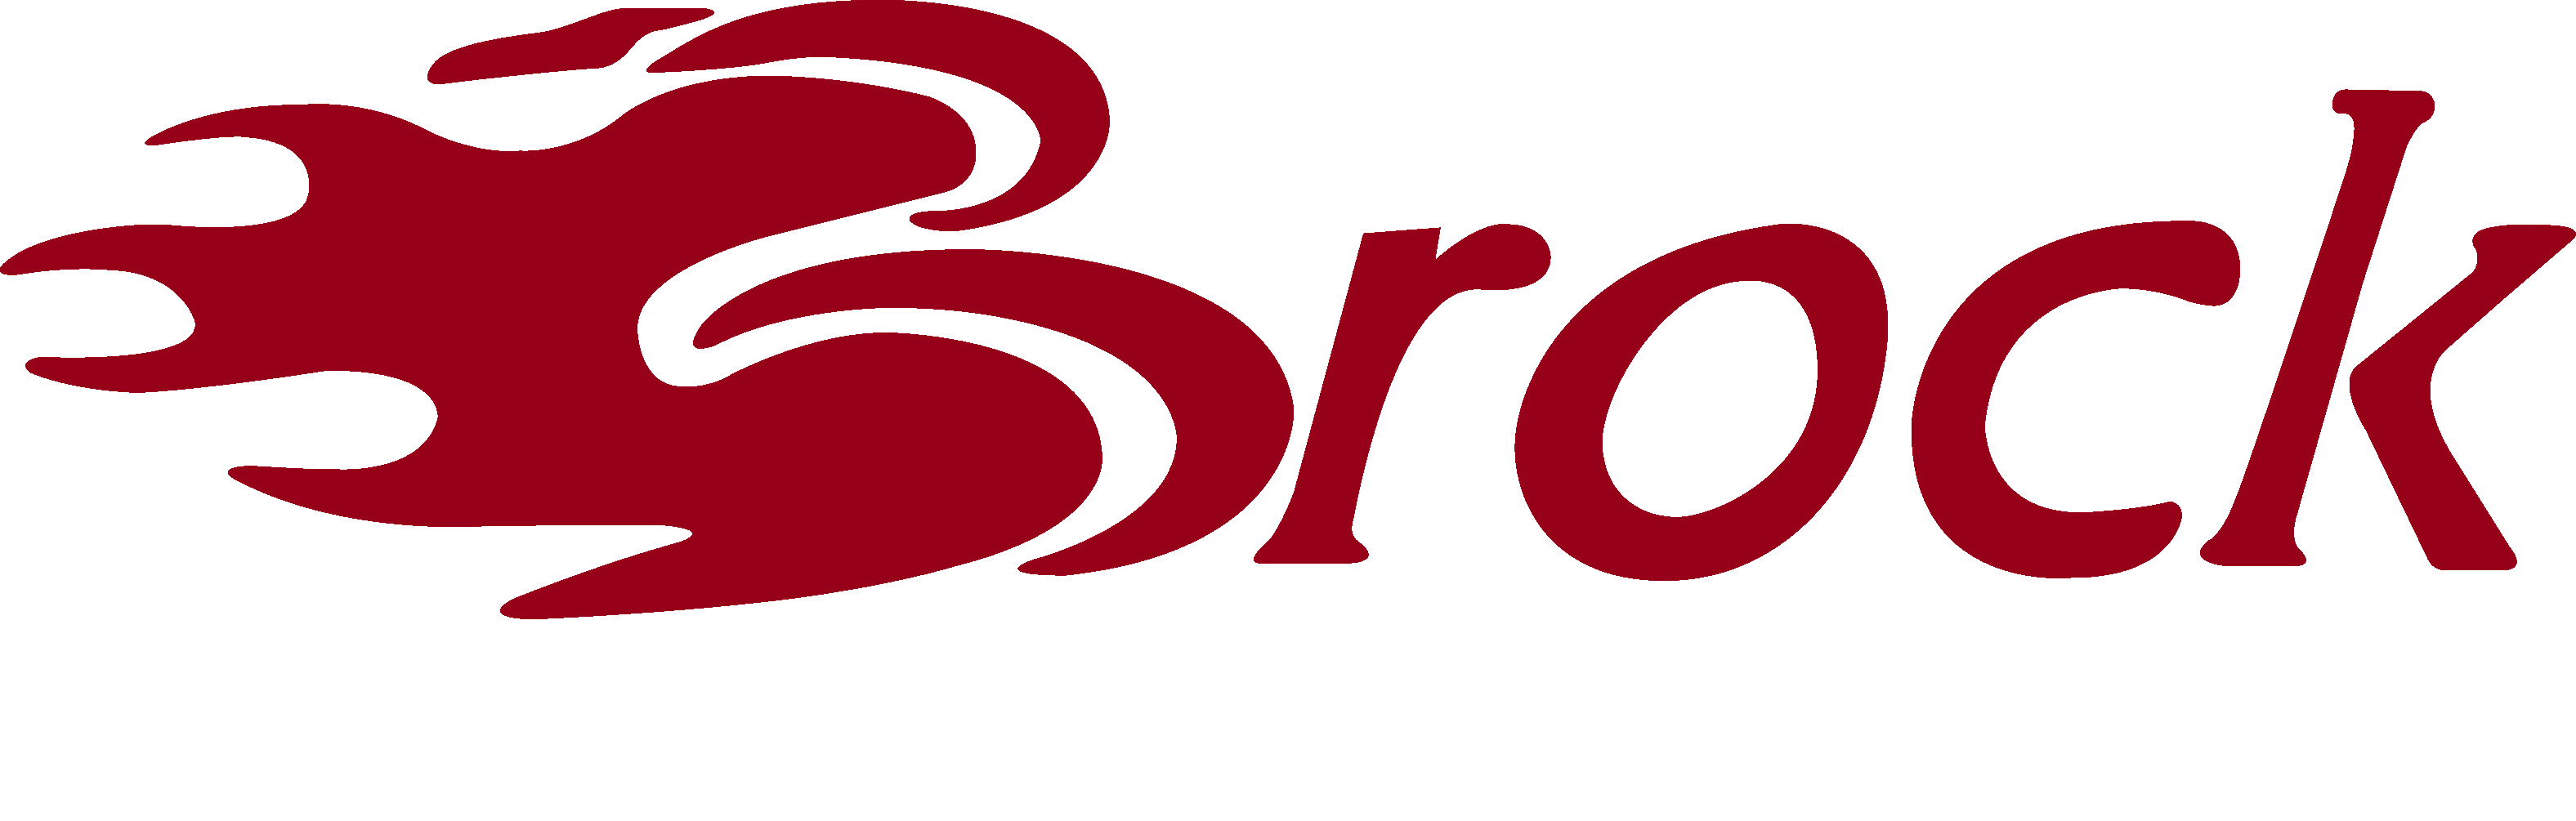 Brock Logo - Index of /downloads/Logo